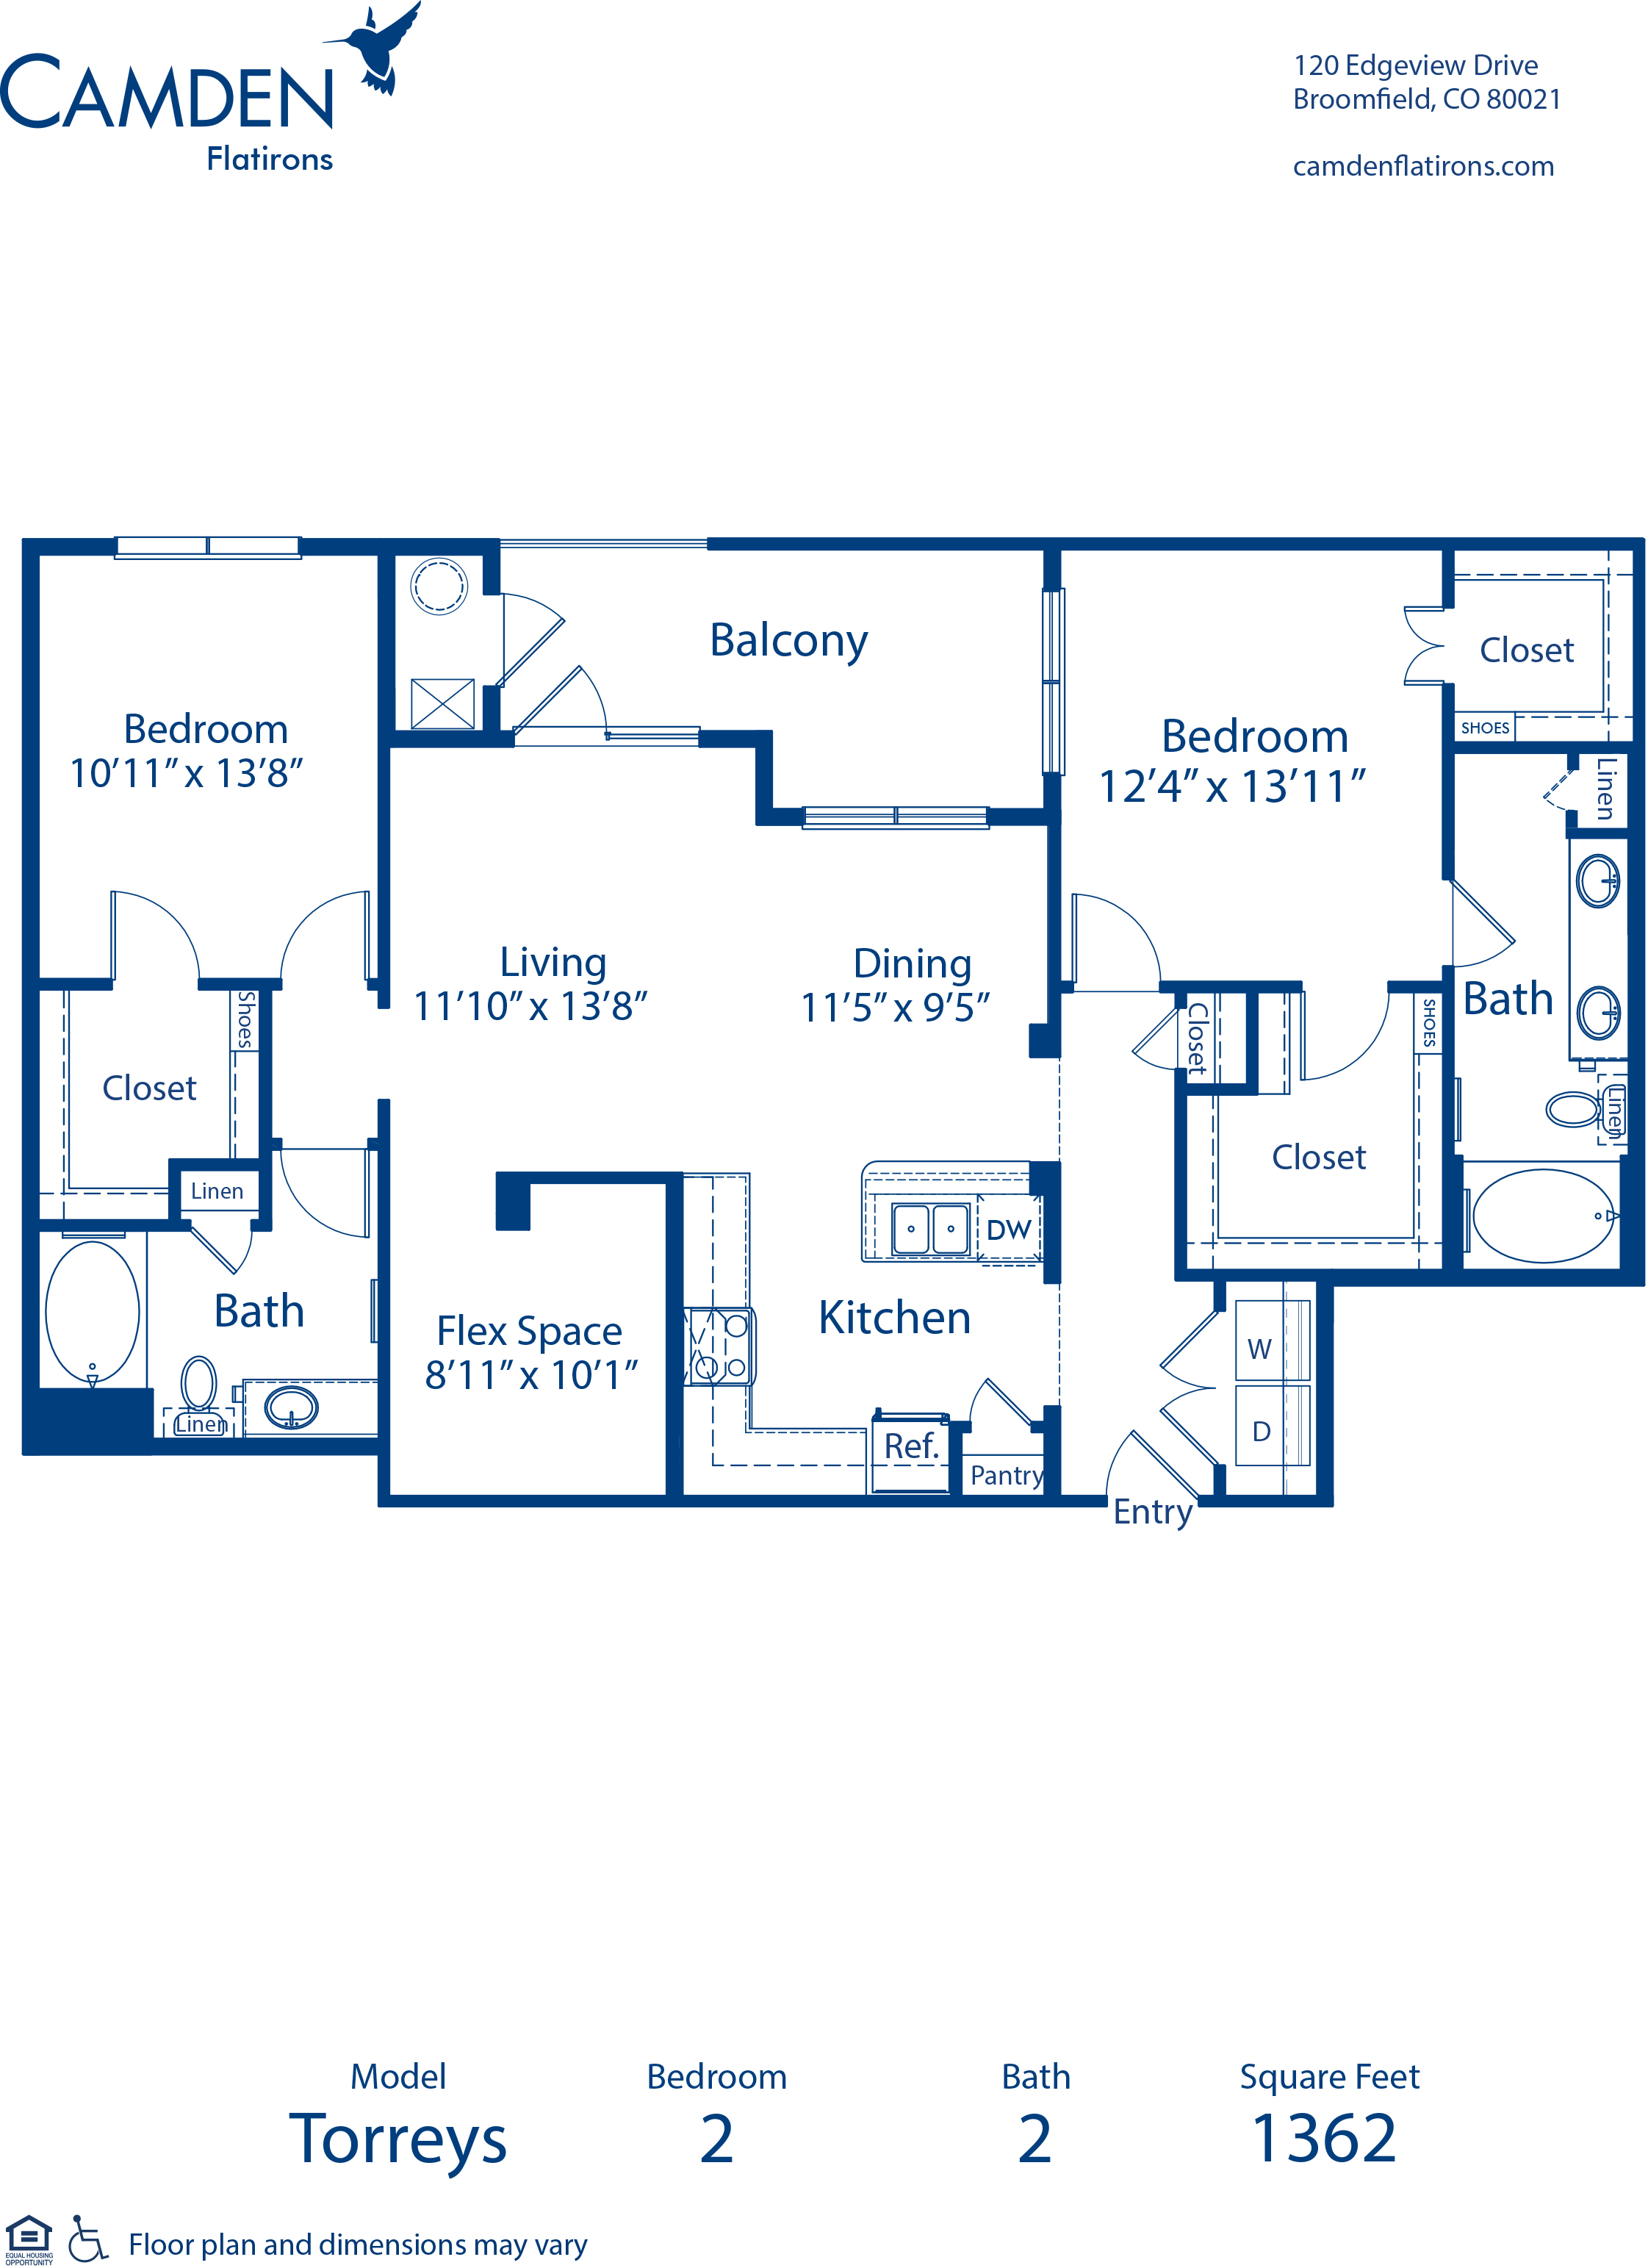 1 & 2 Bedroom Apartments in Broomfield, CO - Camden Flatirons